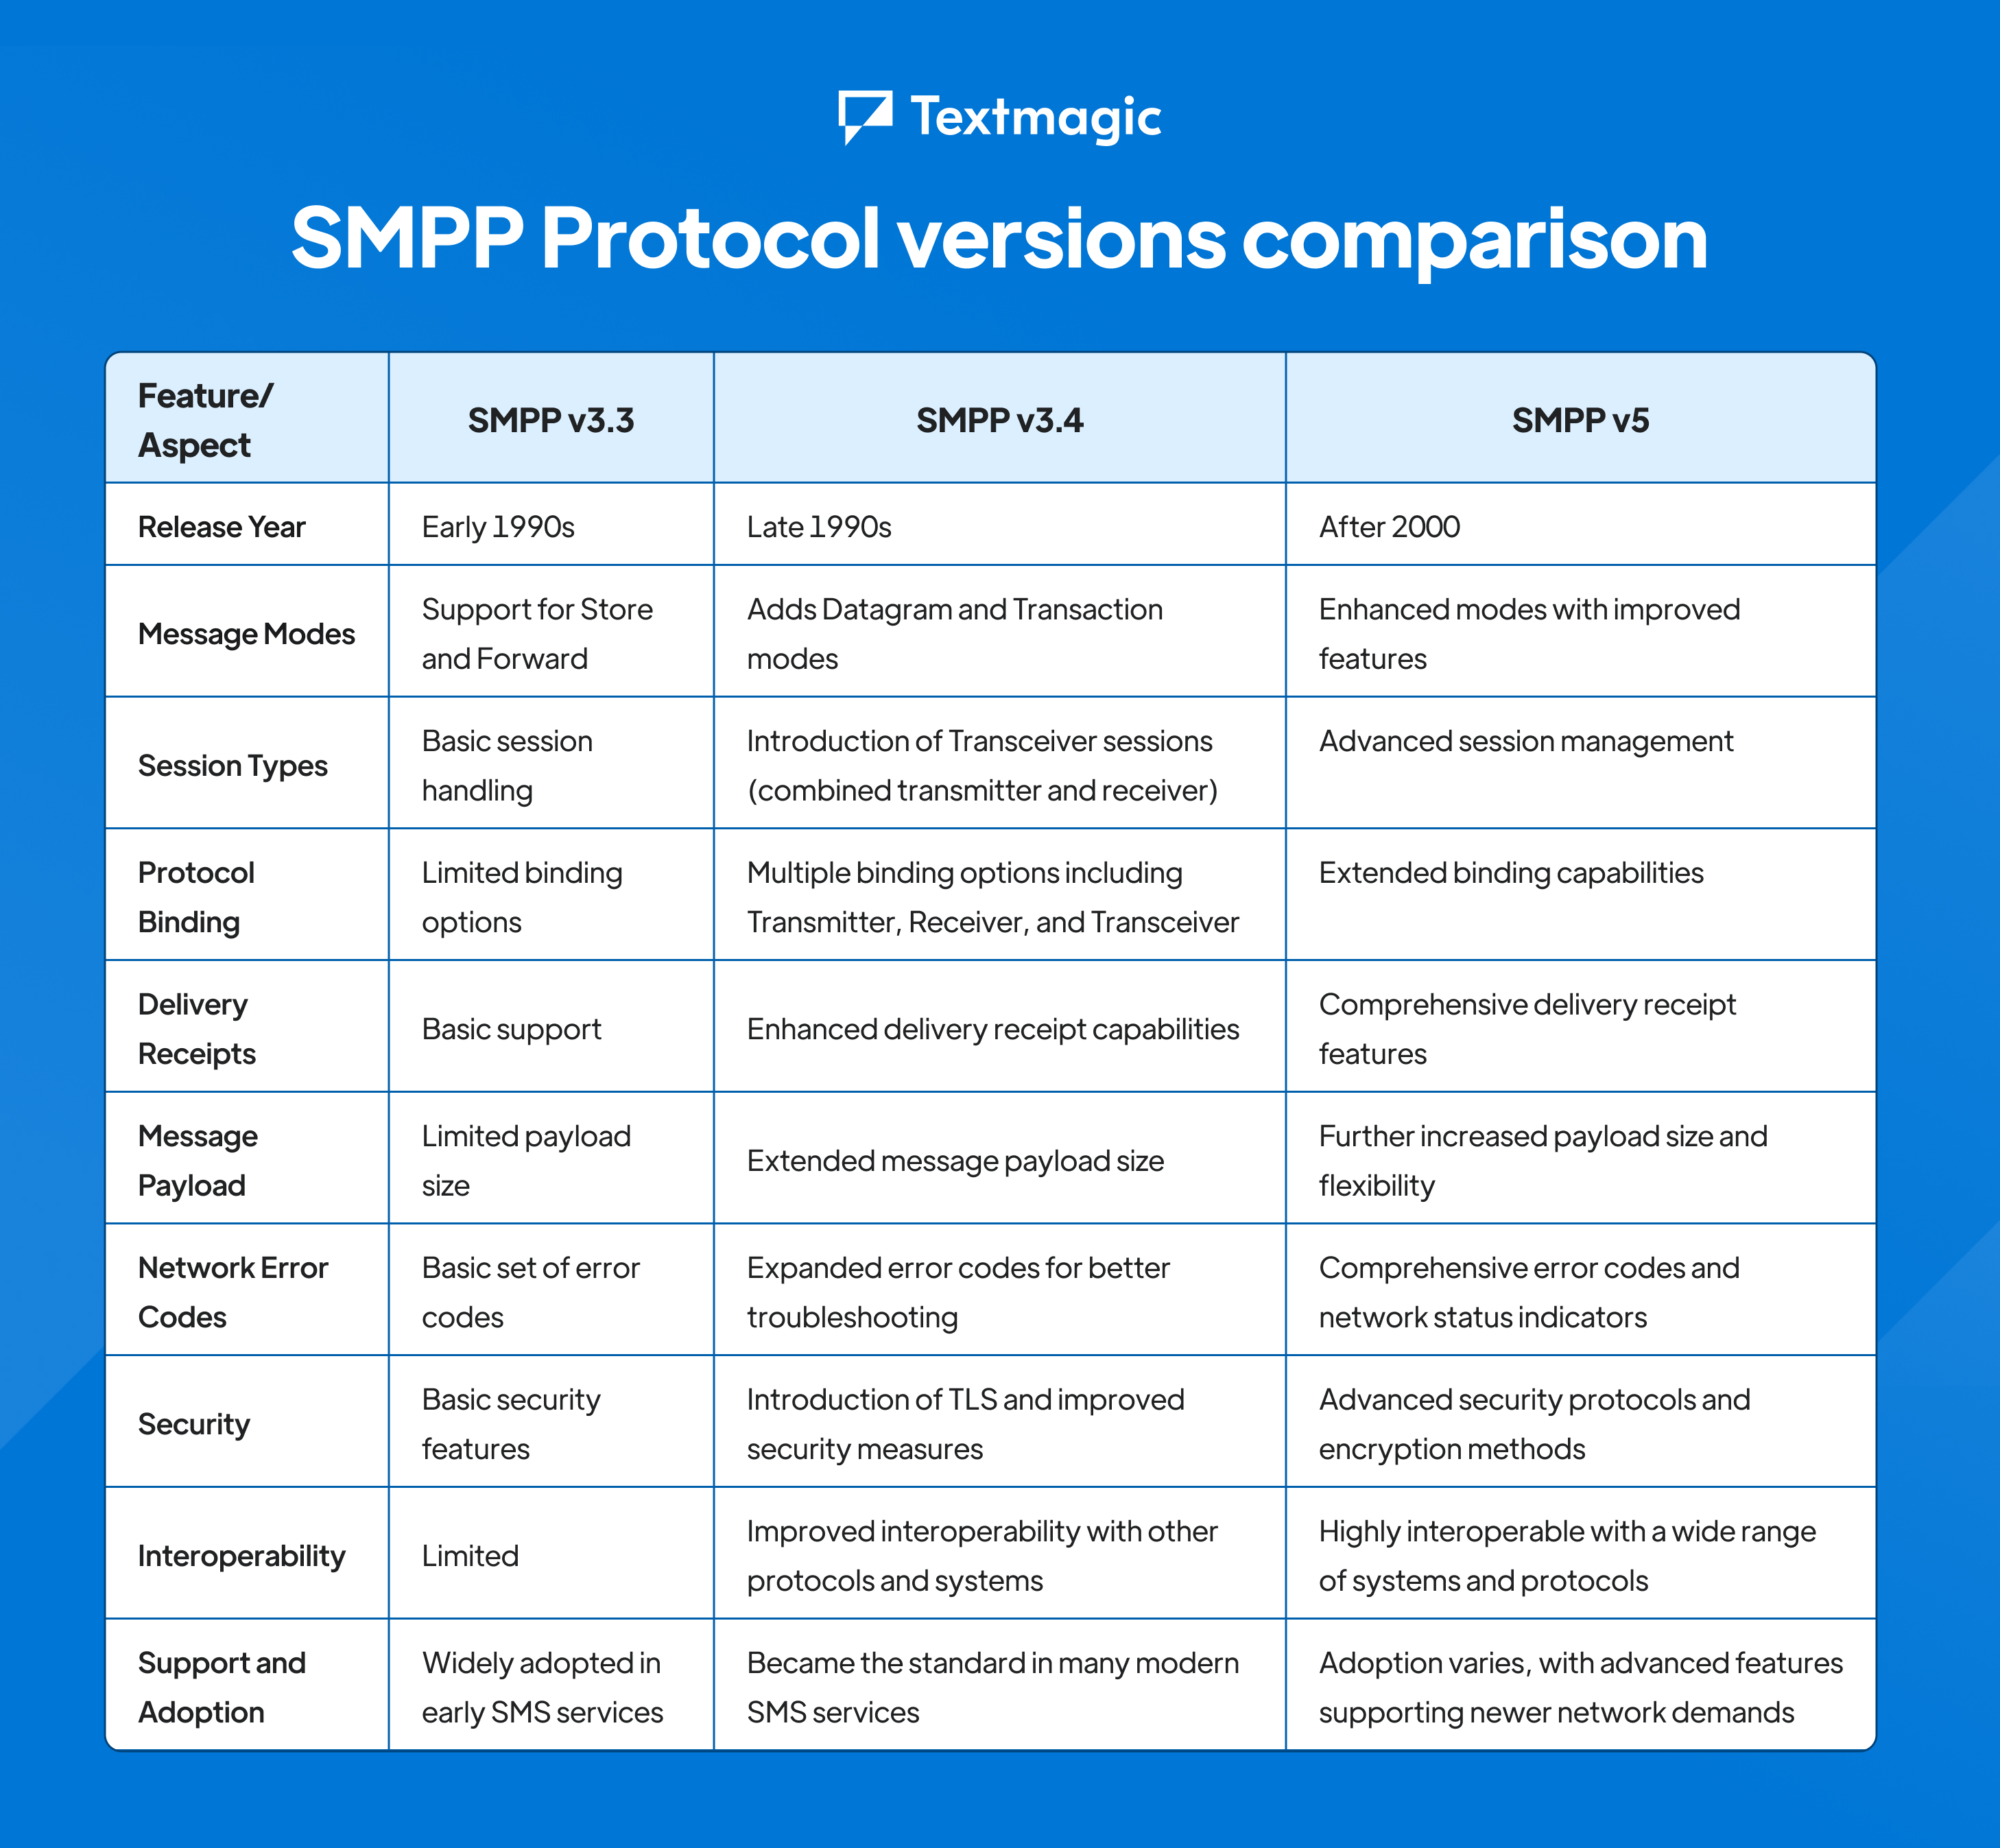 SMPP versions comparison table